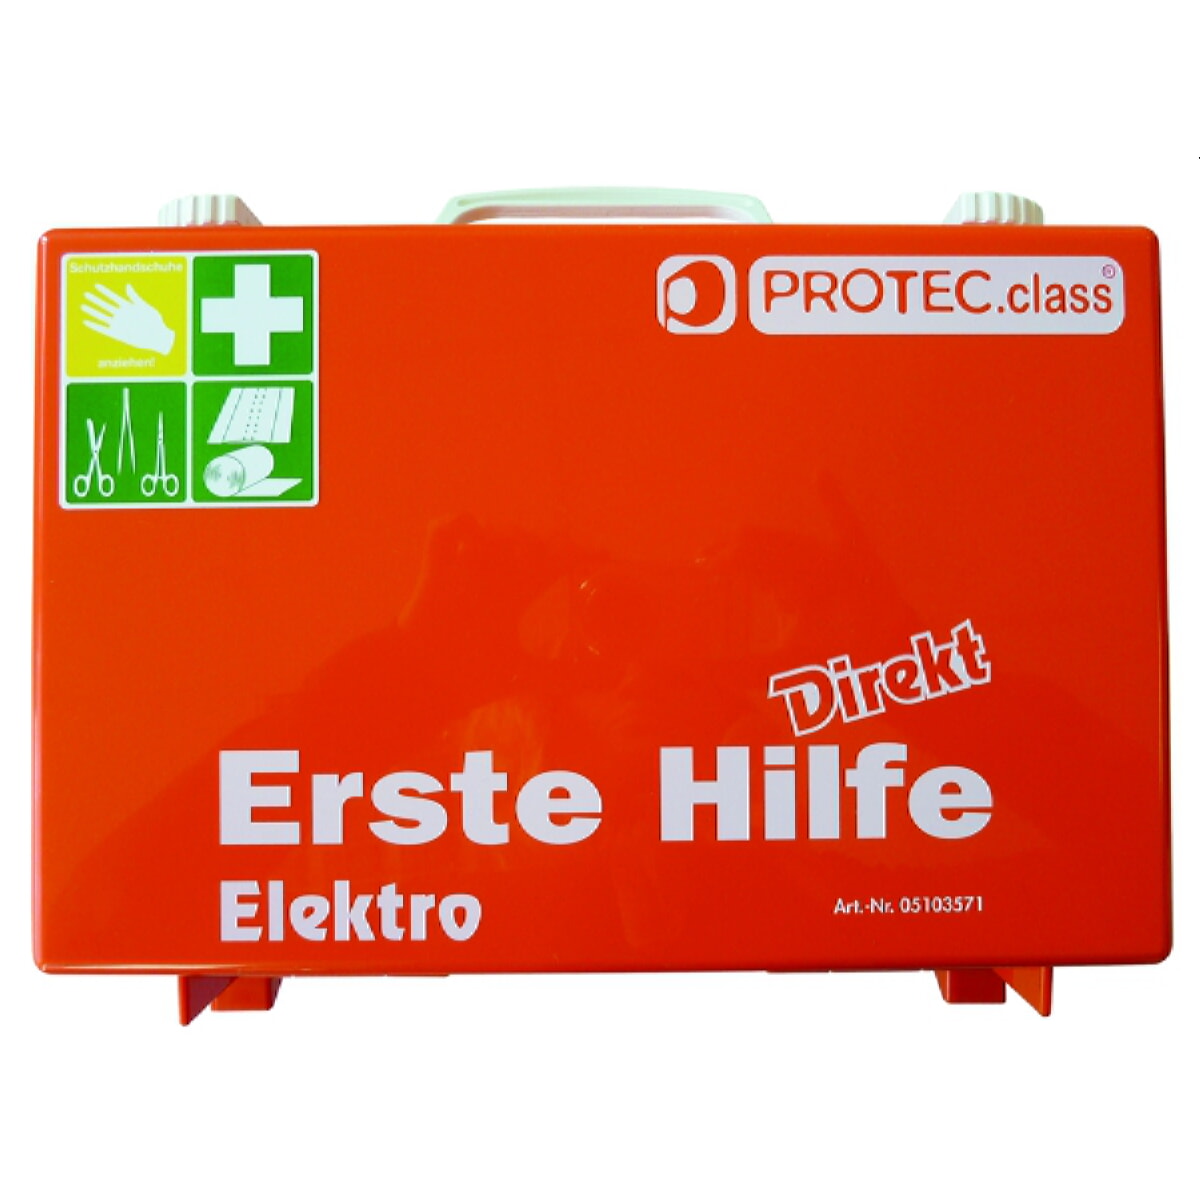 PROTEC.class Ersatzfüllung PEHKEE EH Koffer Elektro (MHD) 05103572